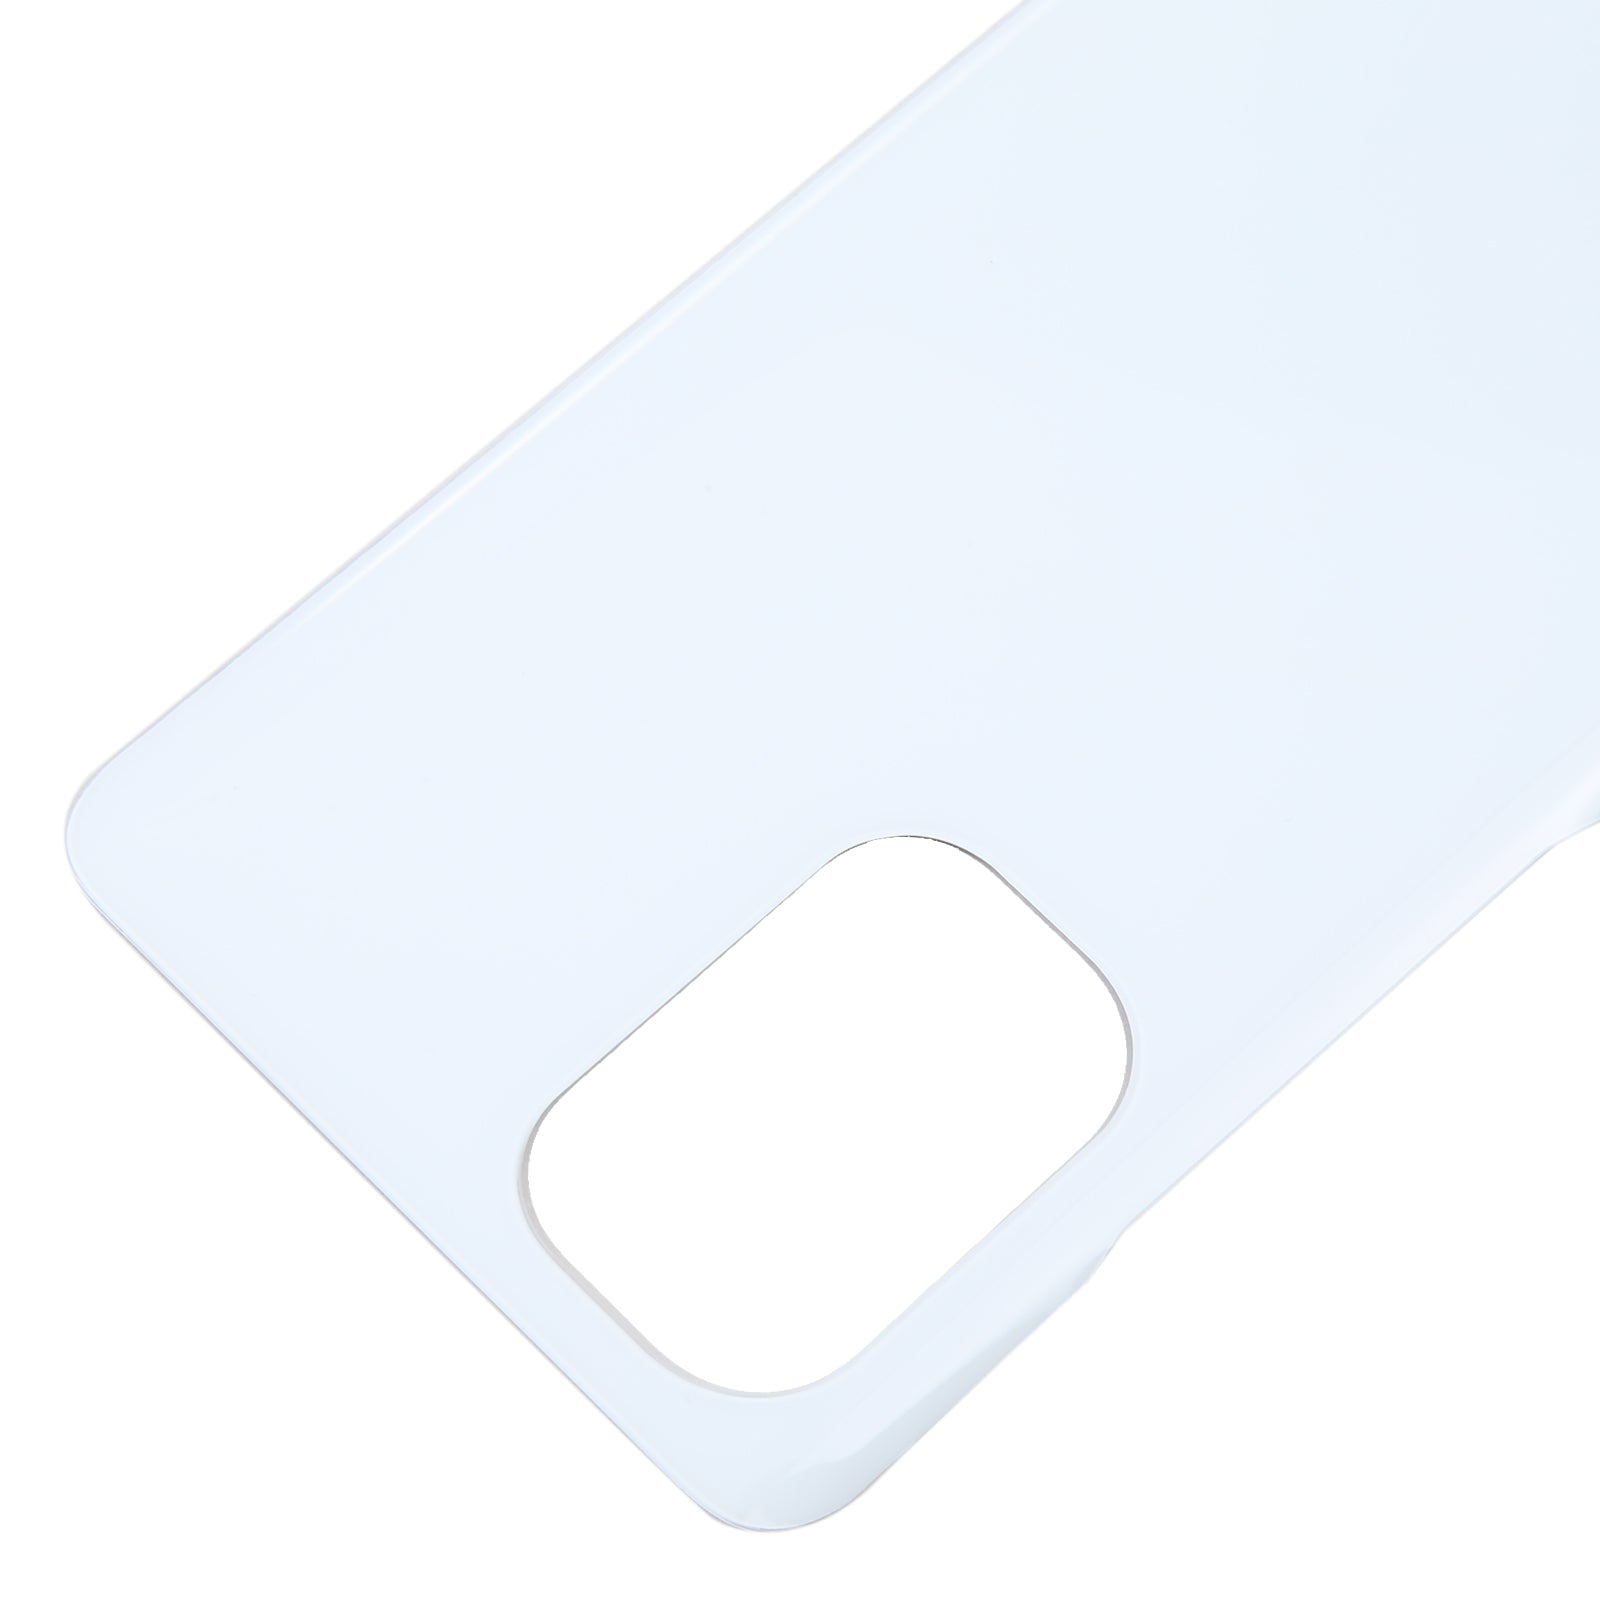 Battery Cover Back Cover Xiaomi Mi 11x Pro White